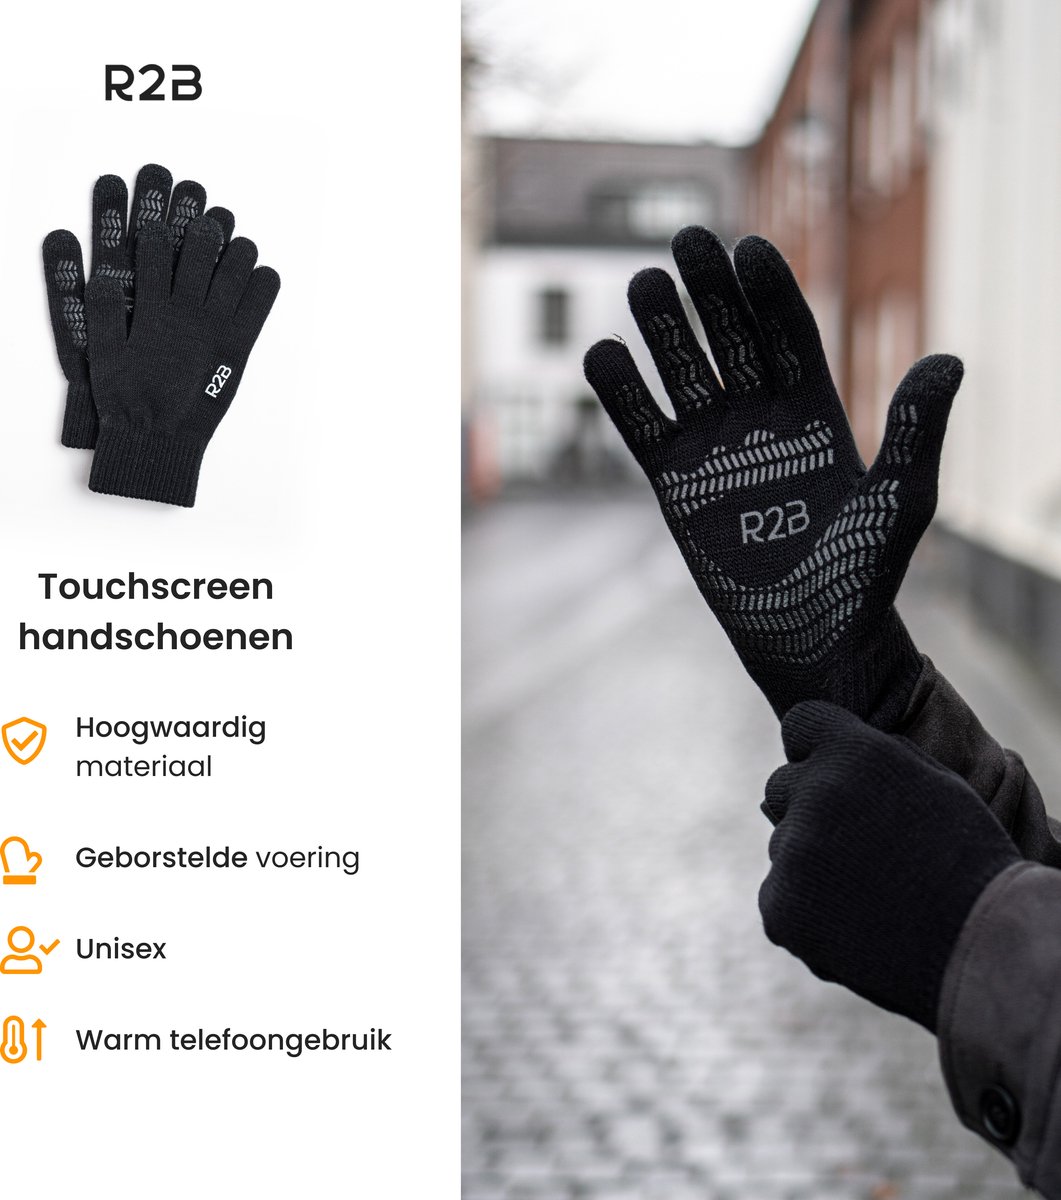 Biologische Kleding Fingerless Gloves Eco Vriendelijk Grijs Duurzaam Accessoires Handschoenen & wanten Winterhandschoenen 